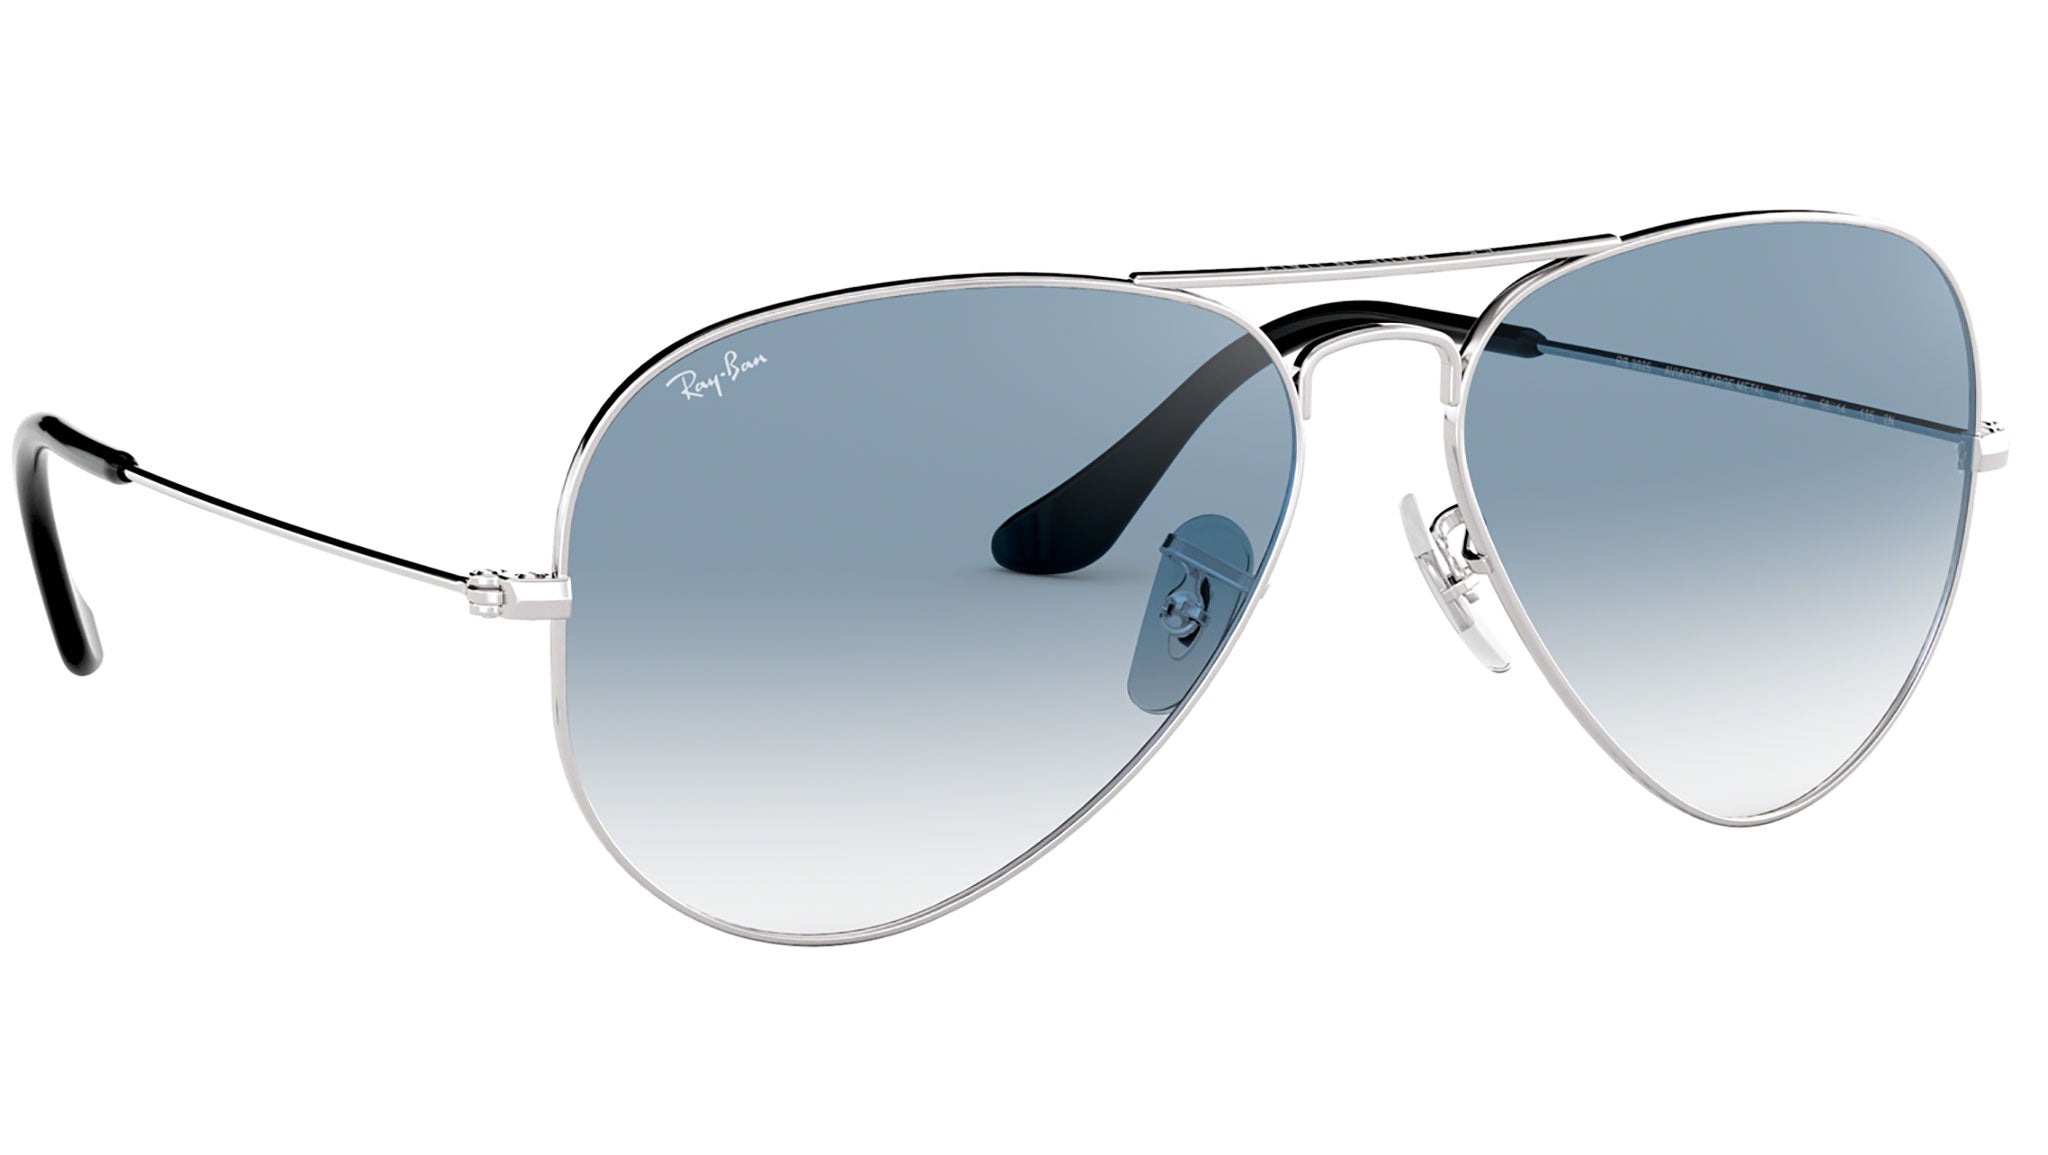 Buy Resist Aviator Sunglasses Golden, Brown For Men & Women Online @ Best  Prices in India | Flipkart.com